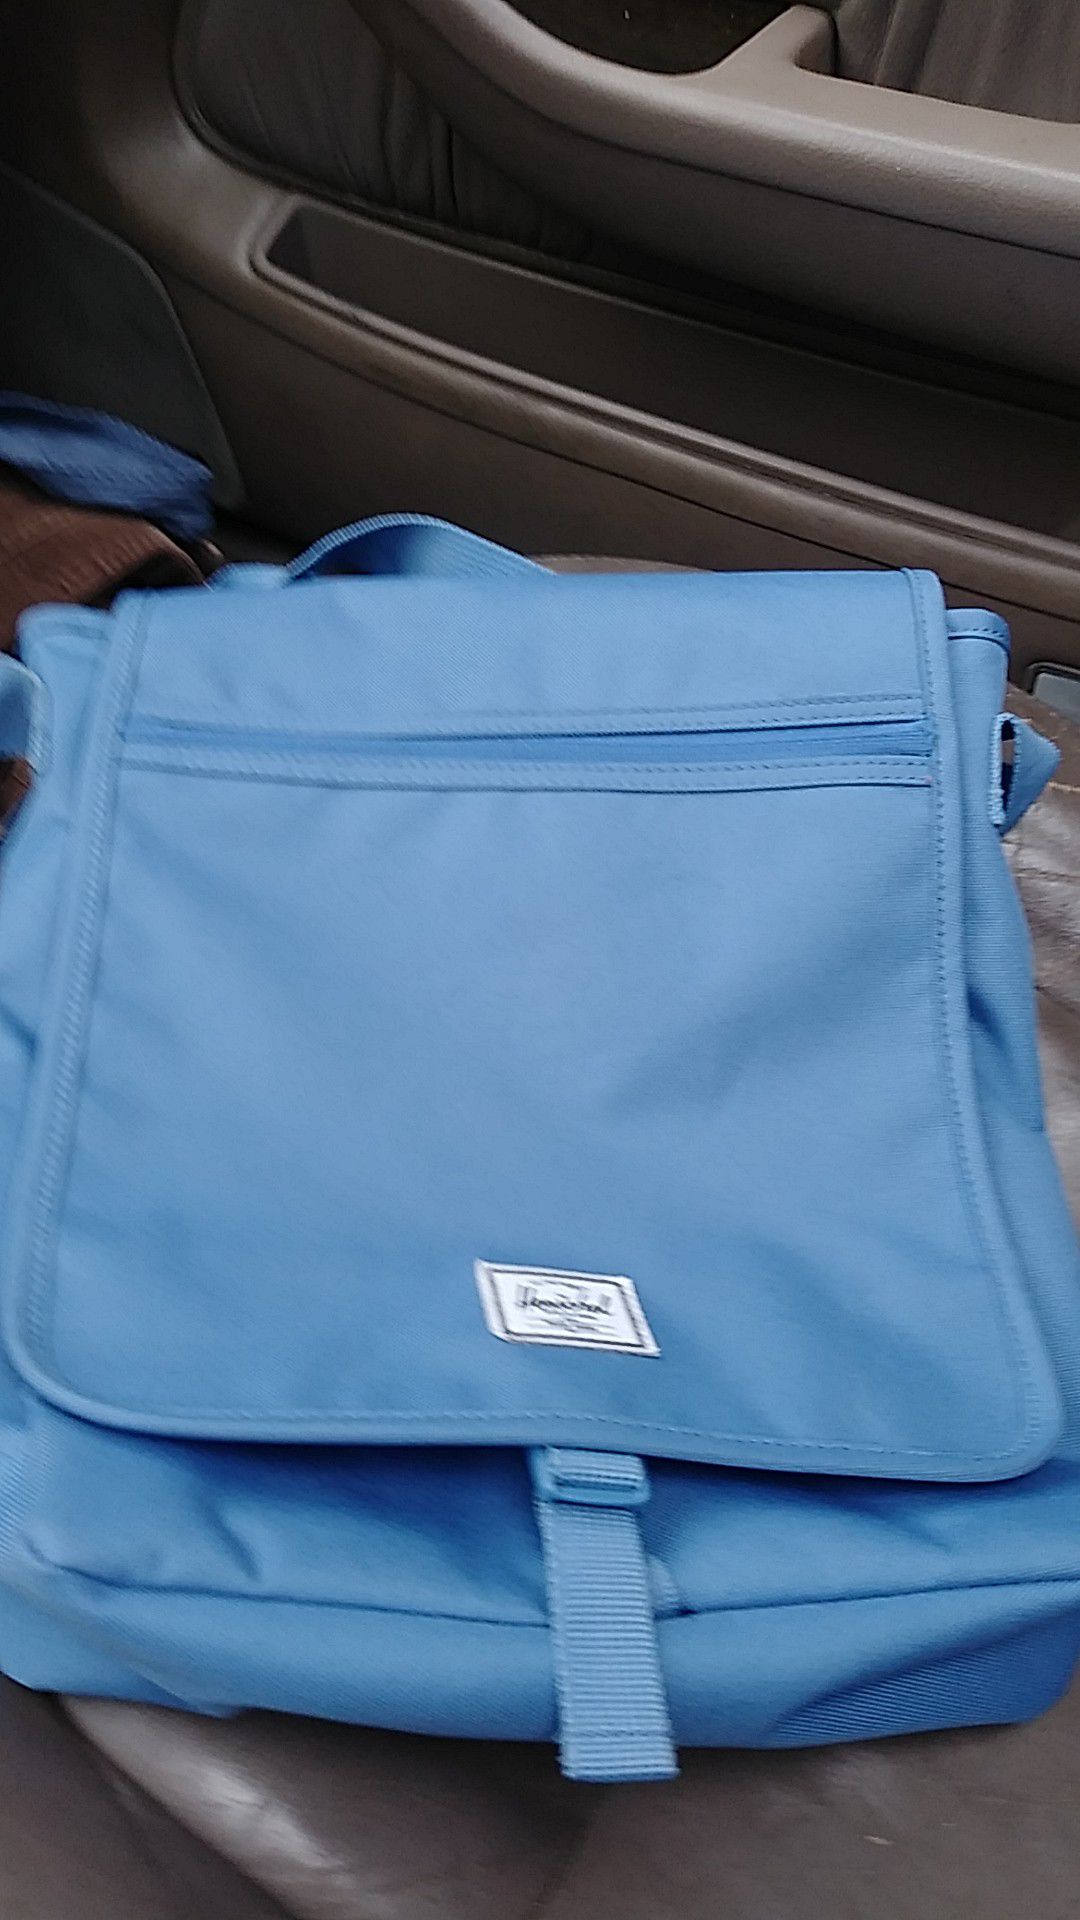 Herschel Lane messenger bag. Brand new.